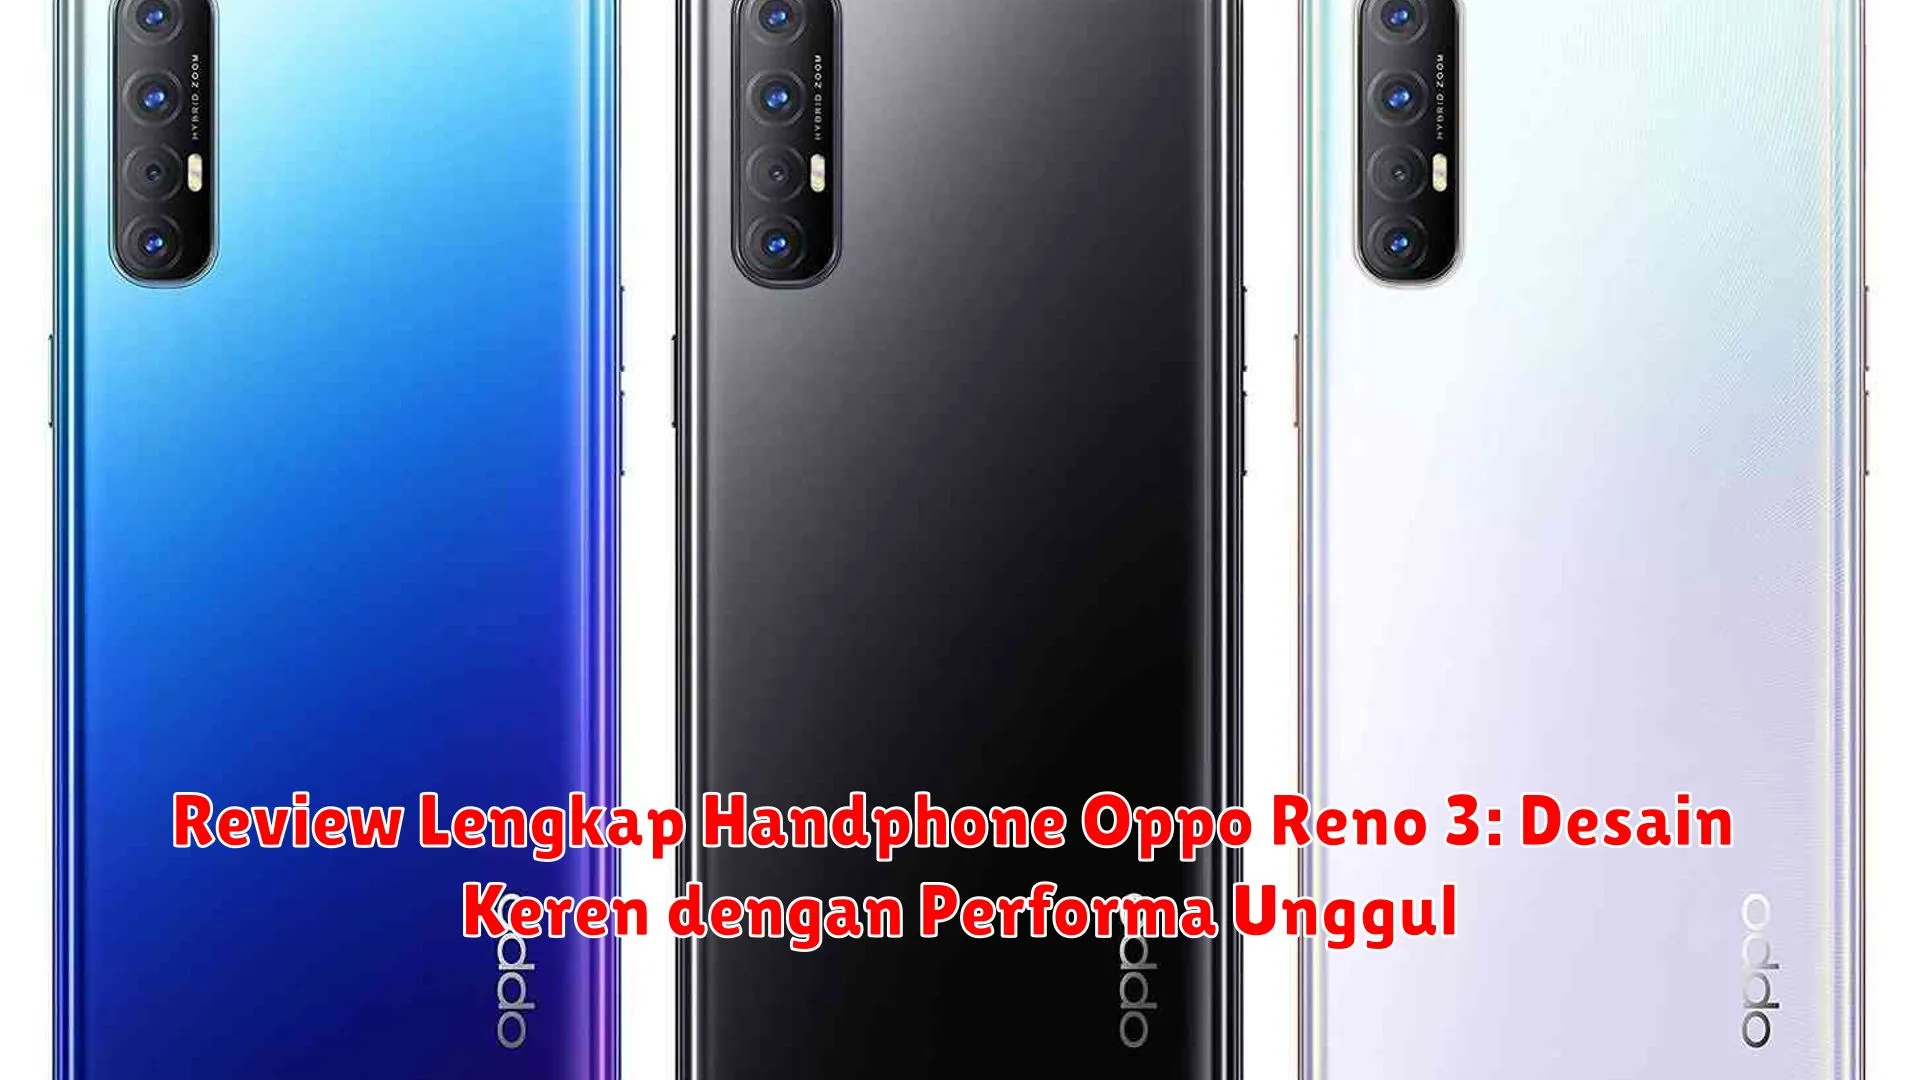 Review Lengkap Handphone Oppo Reno 3: Desain Keren dengan Performa Unggul